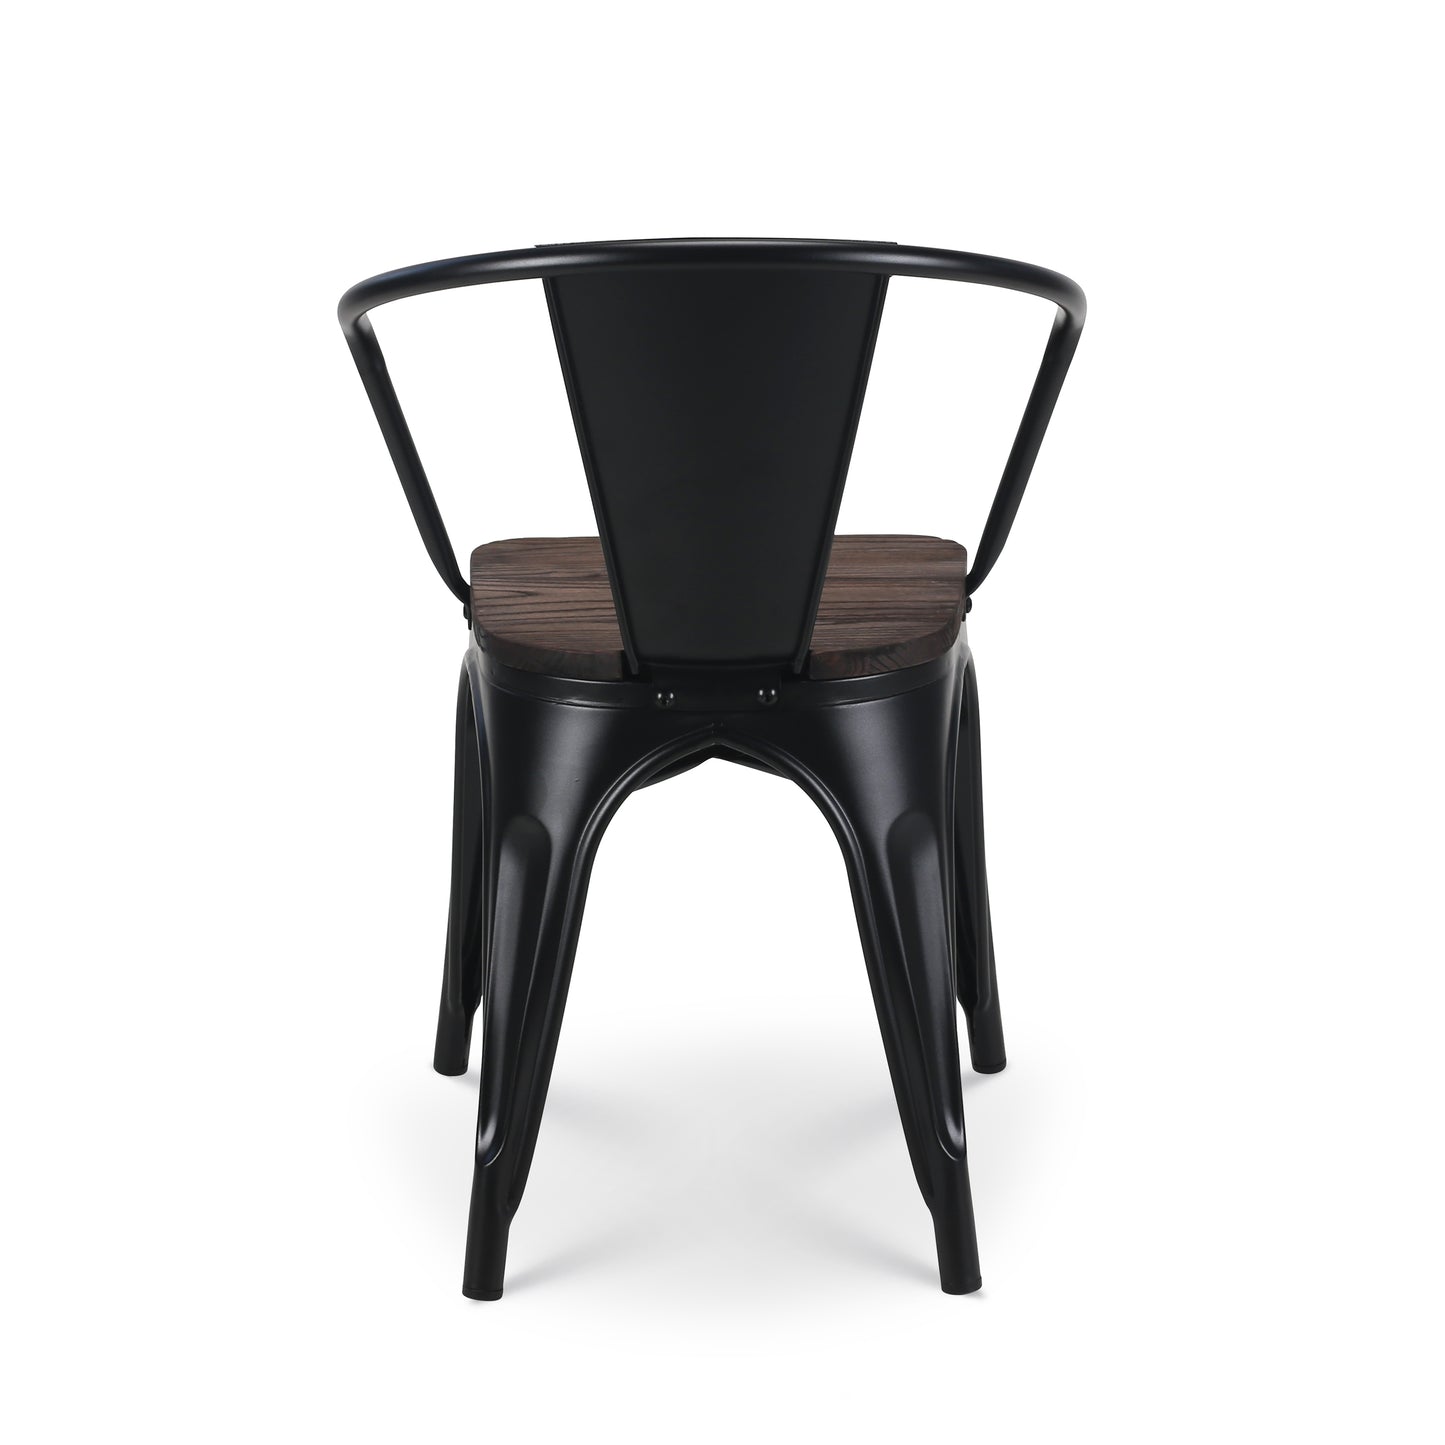 Chaise en métal noir mat style industriel avec assise en bois foncé - Avec accoudoirs